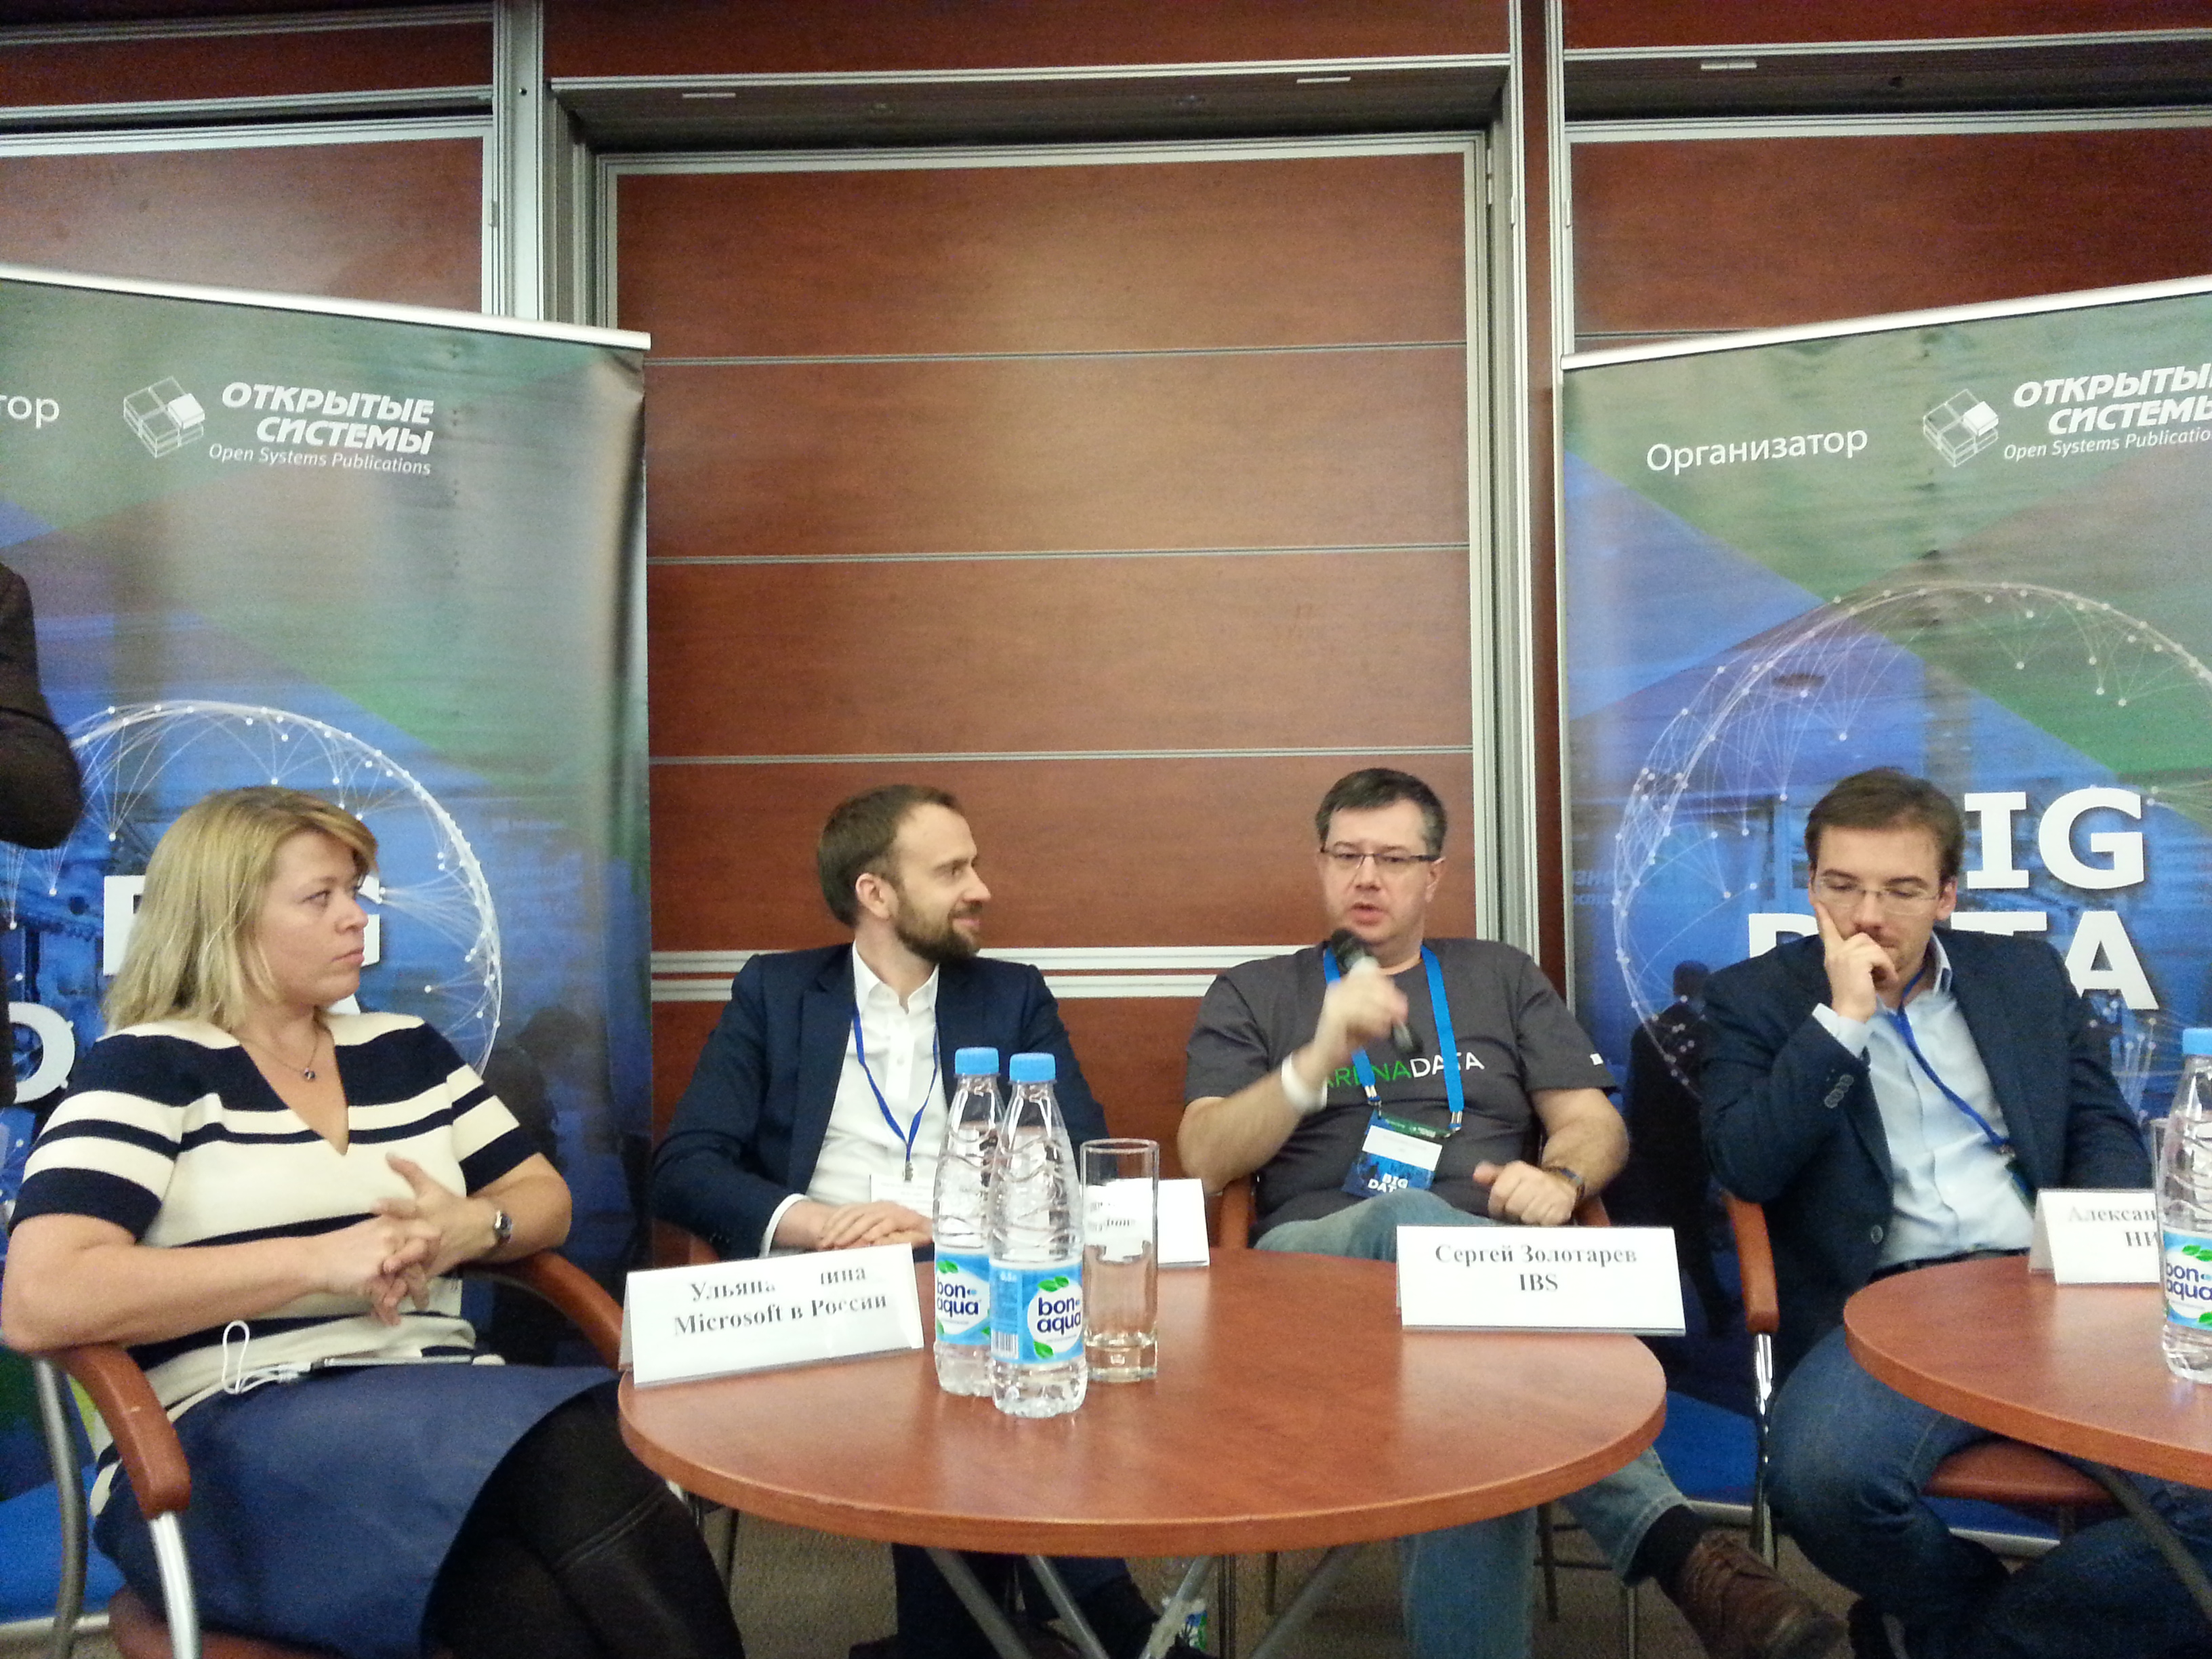 Дмитрий Мариничев провел дискуссию на Форуме Big Data 2017